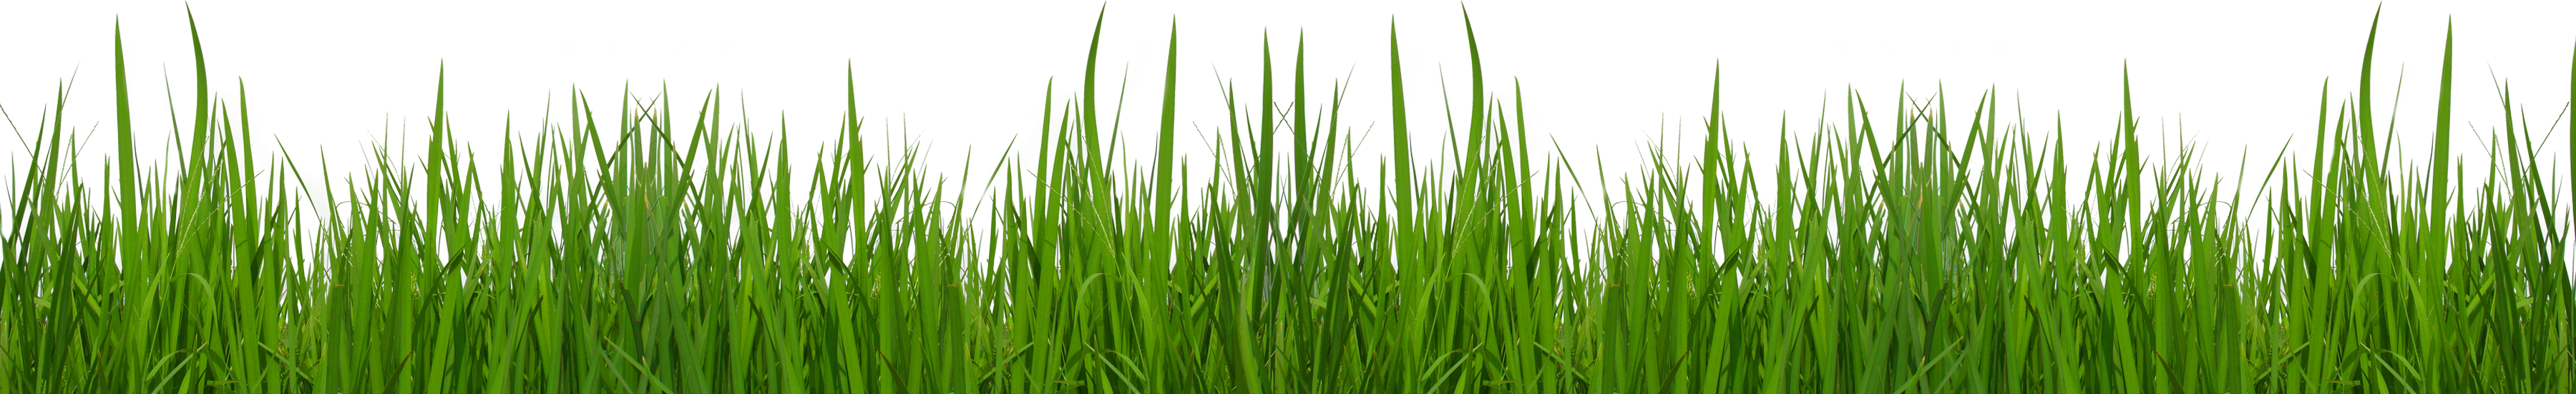 Free grass clip art pictures - Clip Art Grass